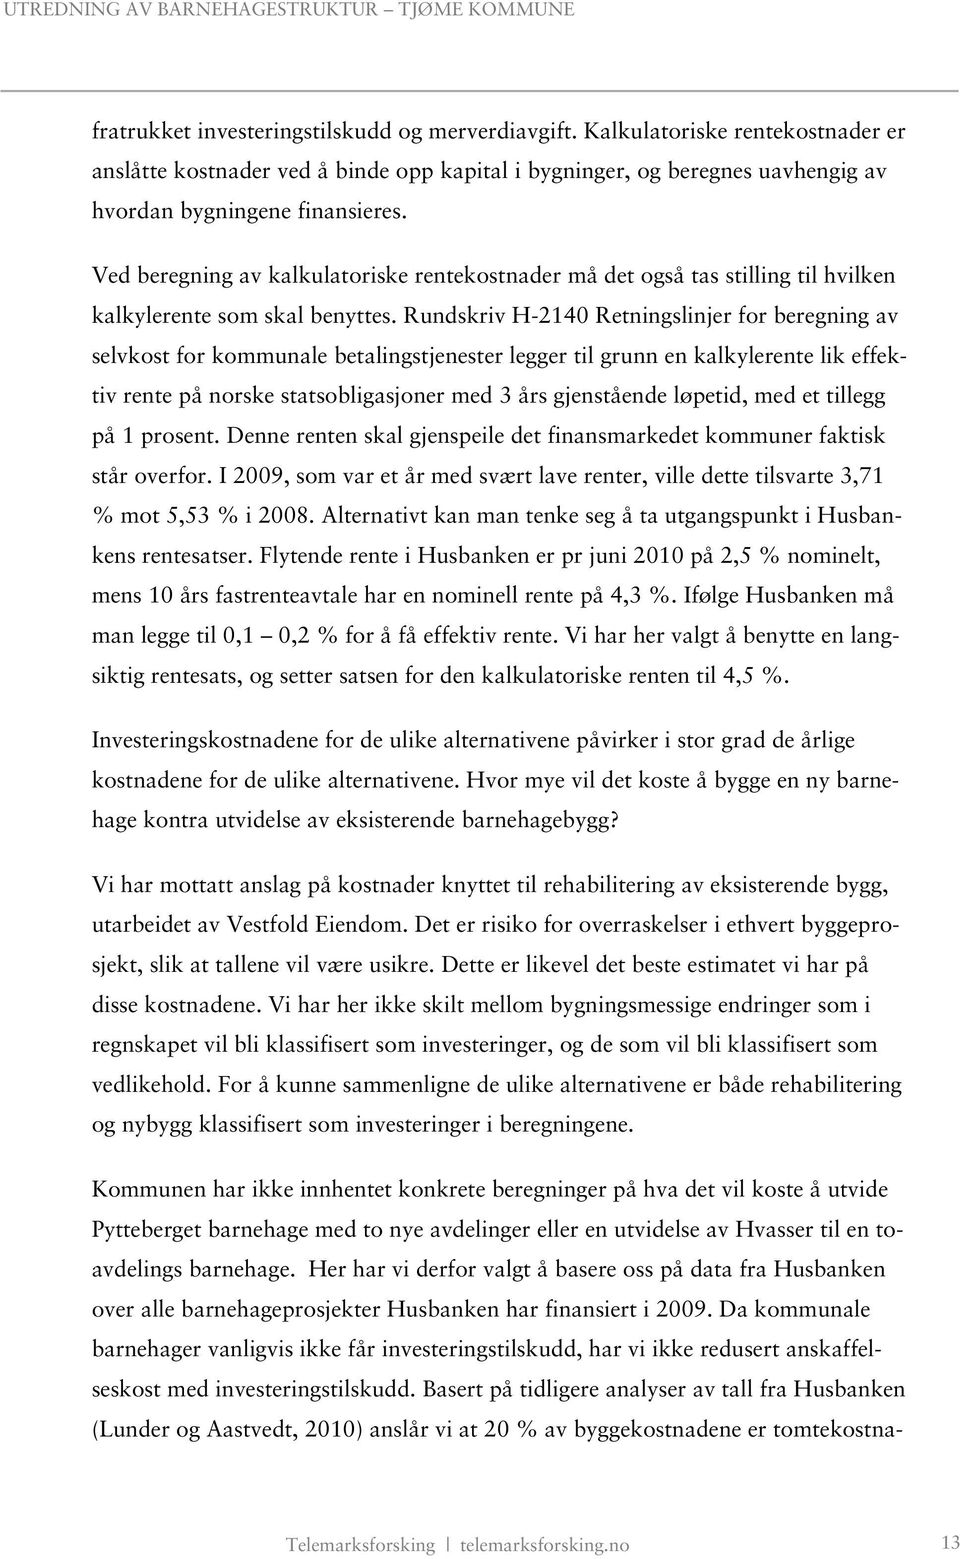 Rundskriv H-2140 Retningslinjer for beregning av selvkost for kommunale betalingstjenester legger til grunn en kalkylerente lik effektiv rente på norske statsobligasjoner med 3 års gjenstående